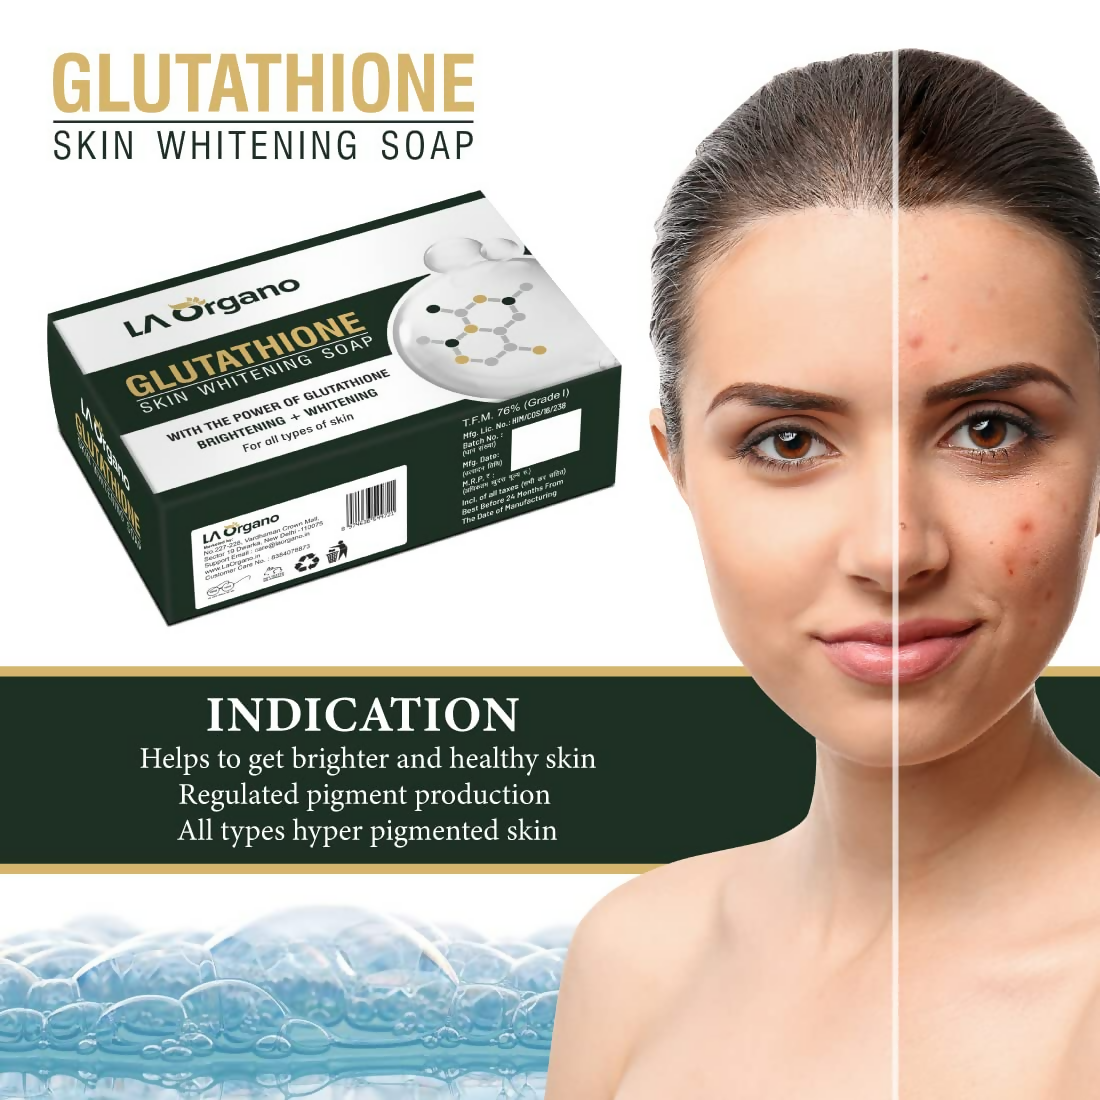 LA Organo Glutathione Skin Whitening Soap